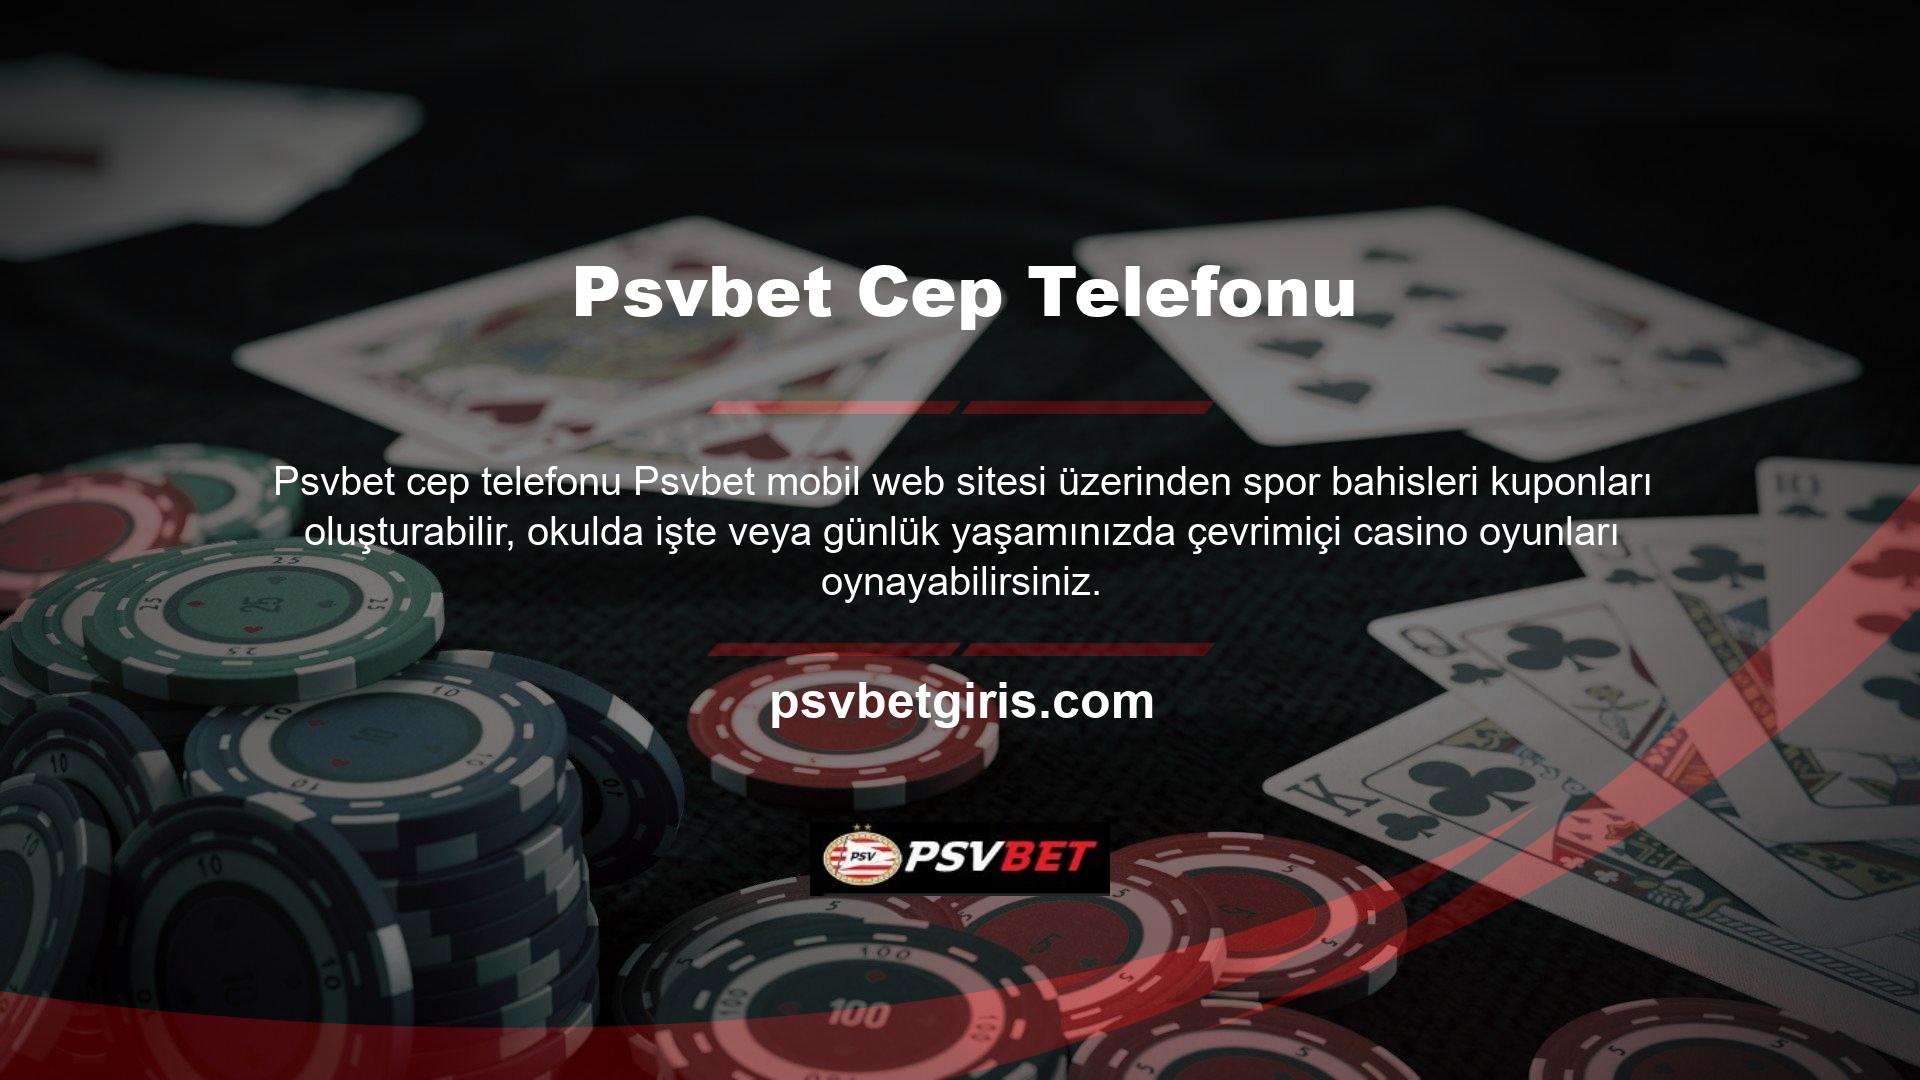 Psvbet öncelikle online casino sitelerinin üyelerine casino bölümleri sunmaktadır